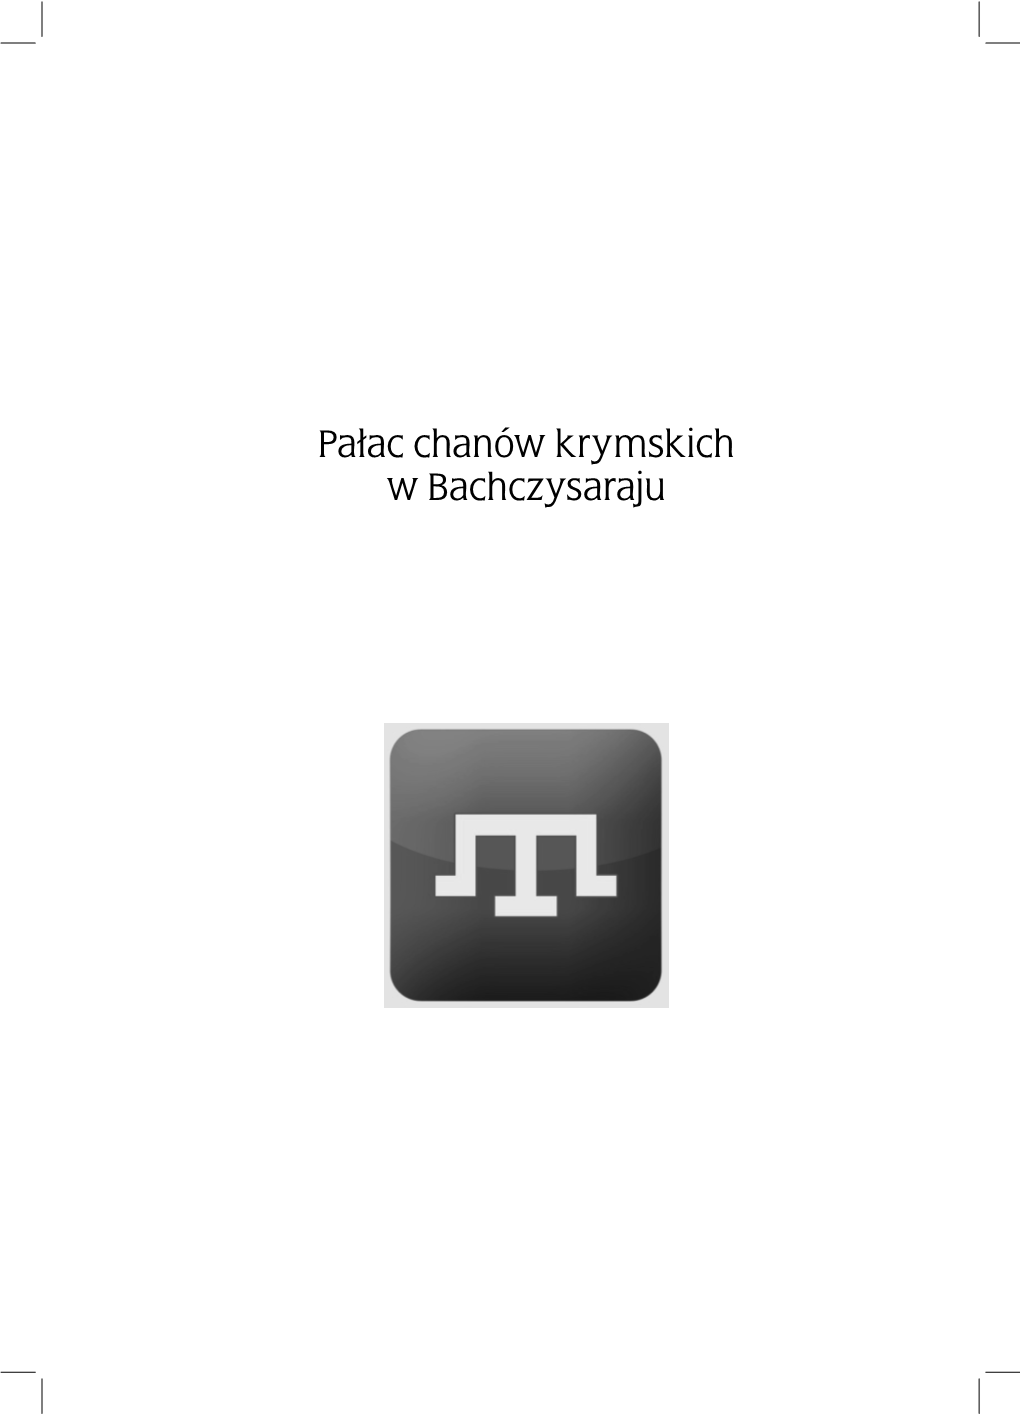 Pa³ac Chanów Krymskich W Bachczysaraju Publikacja Pod Honorowym Patronatem